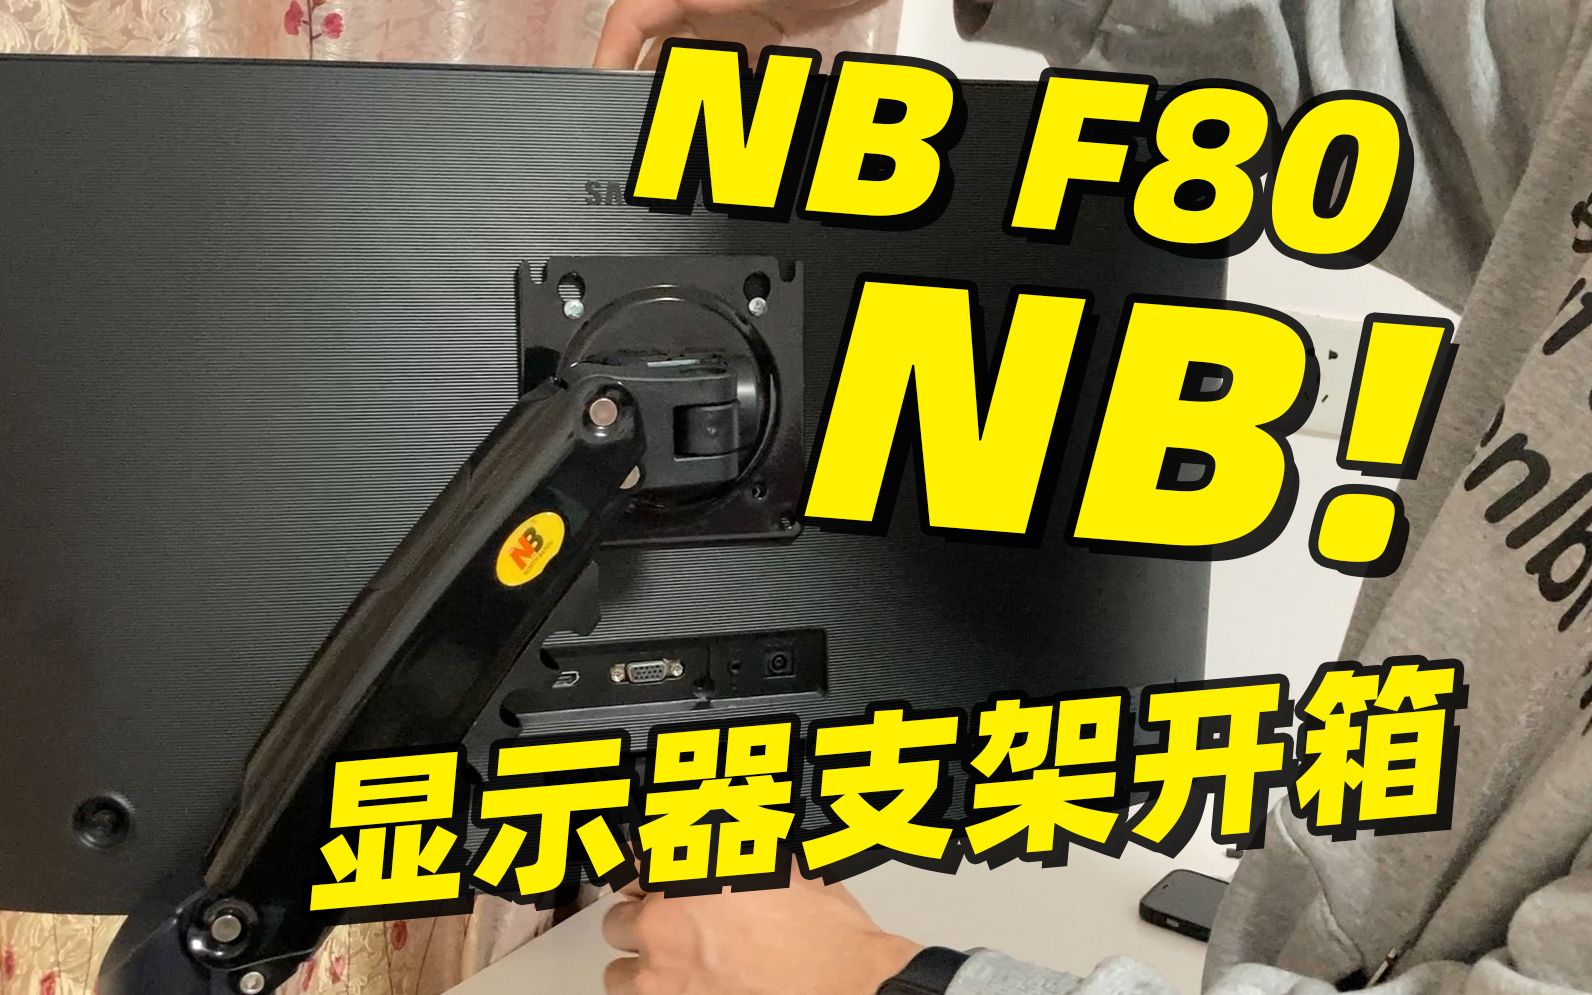 极具性价比的显示器支架 NBF80开箱安装体验